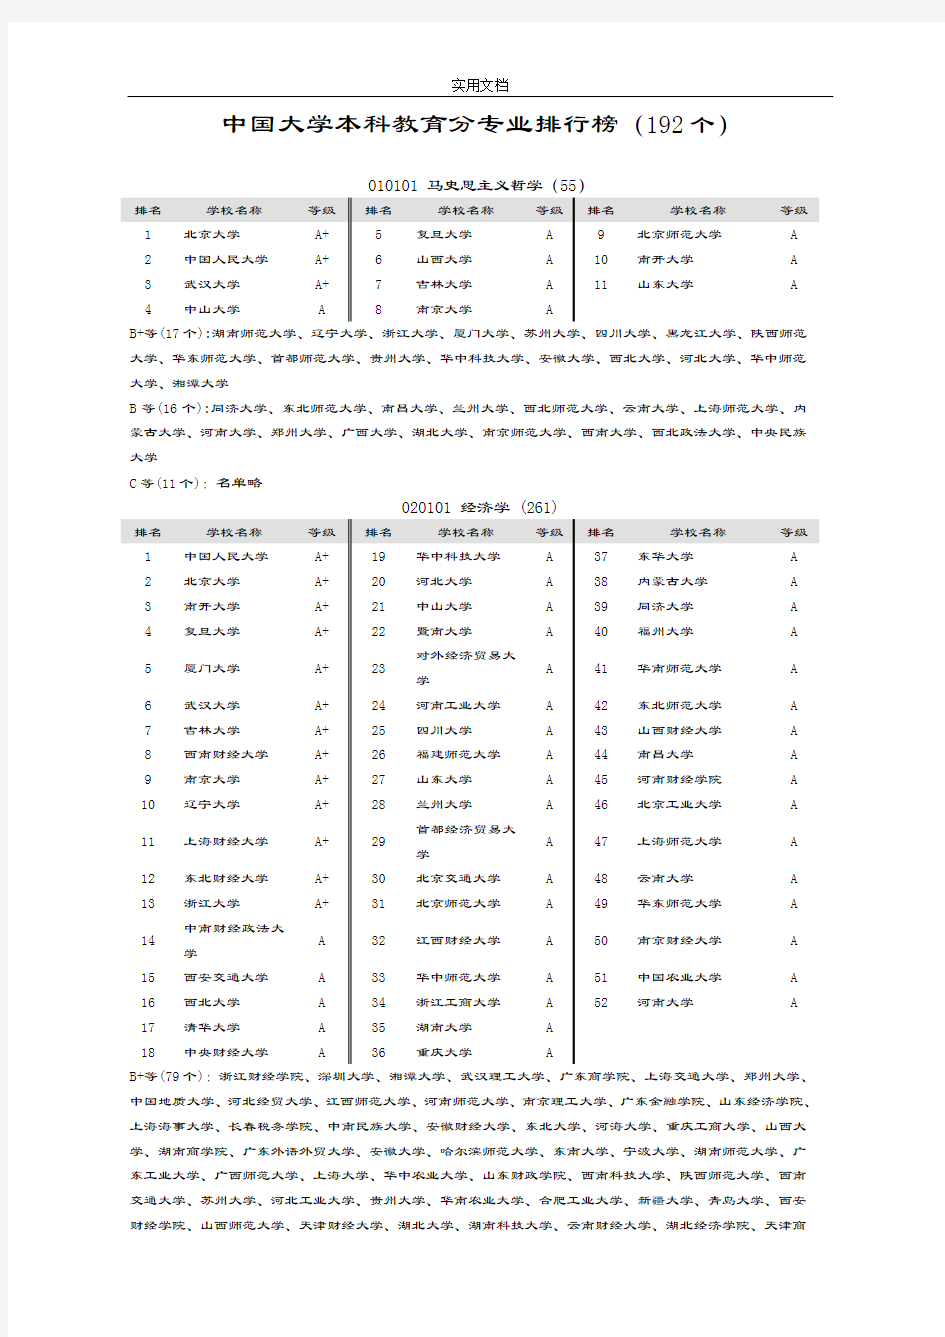 中国大学专业排名(新颖版)